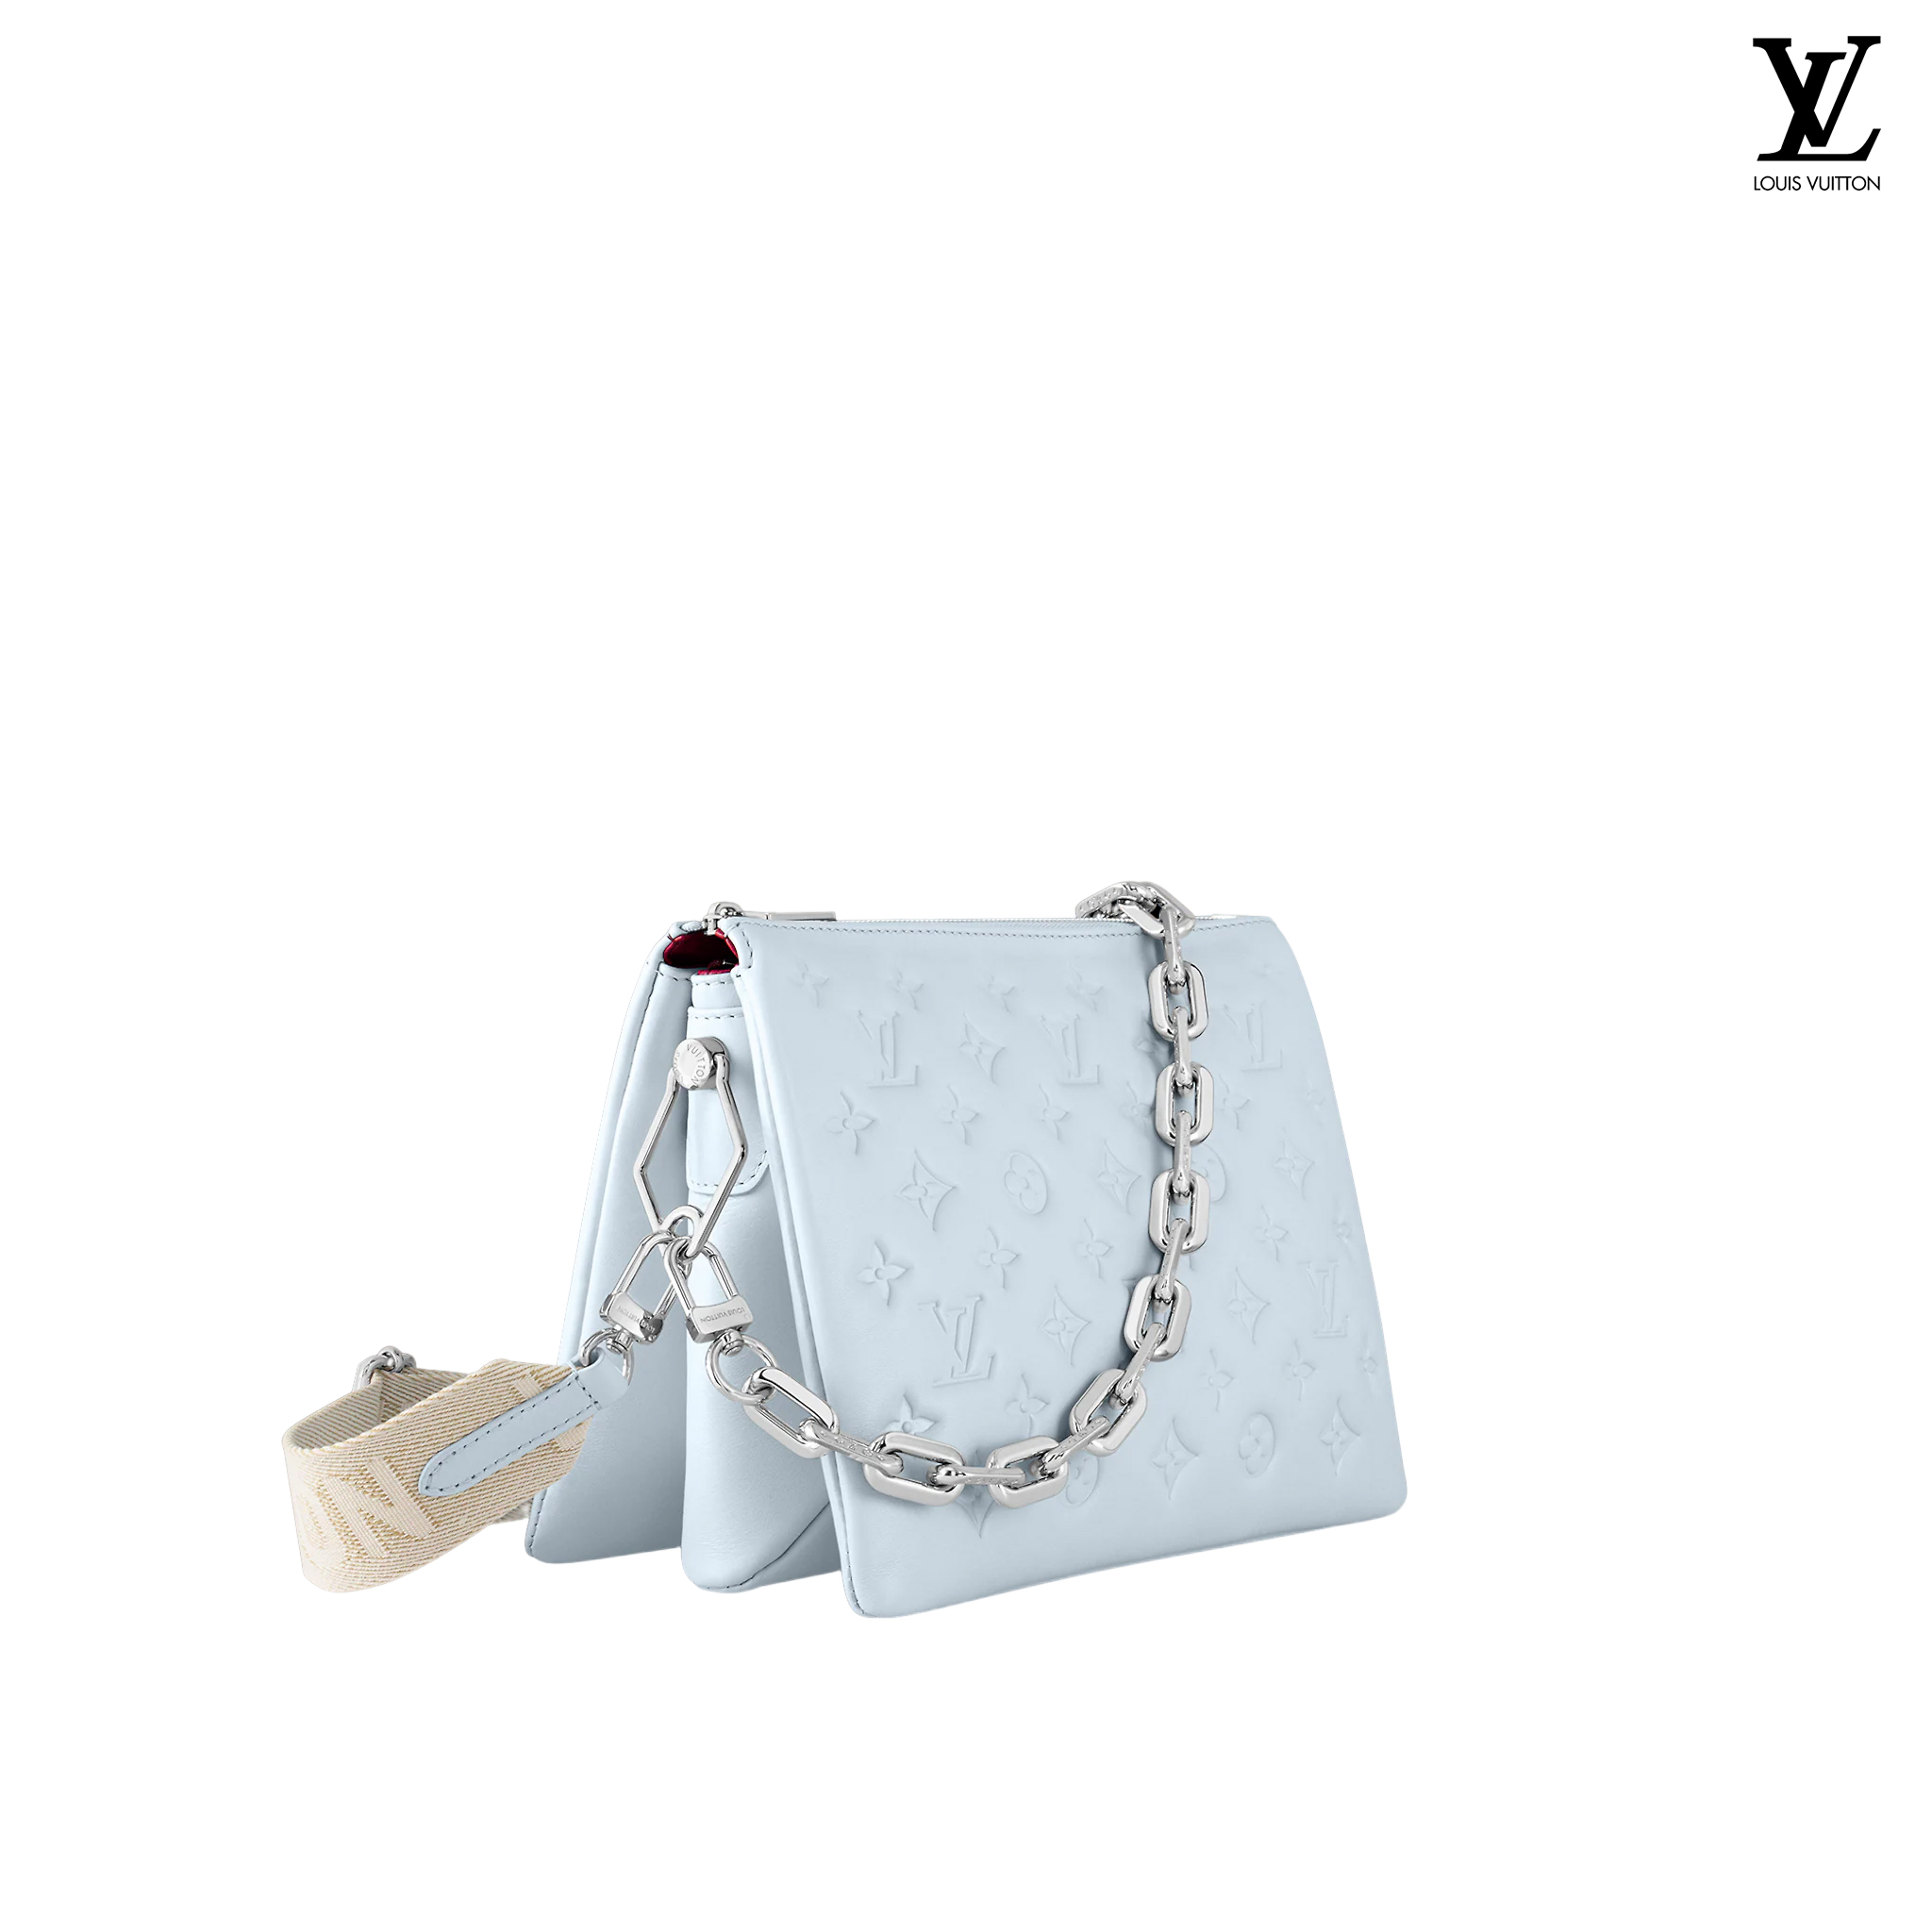 Louis Vuitton Coussin PM Blue Glacier handbags